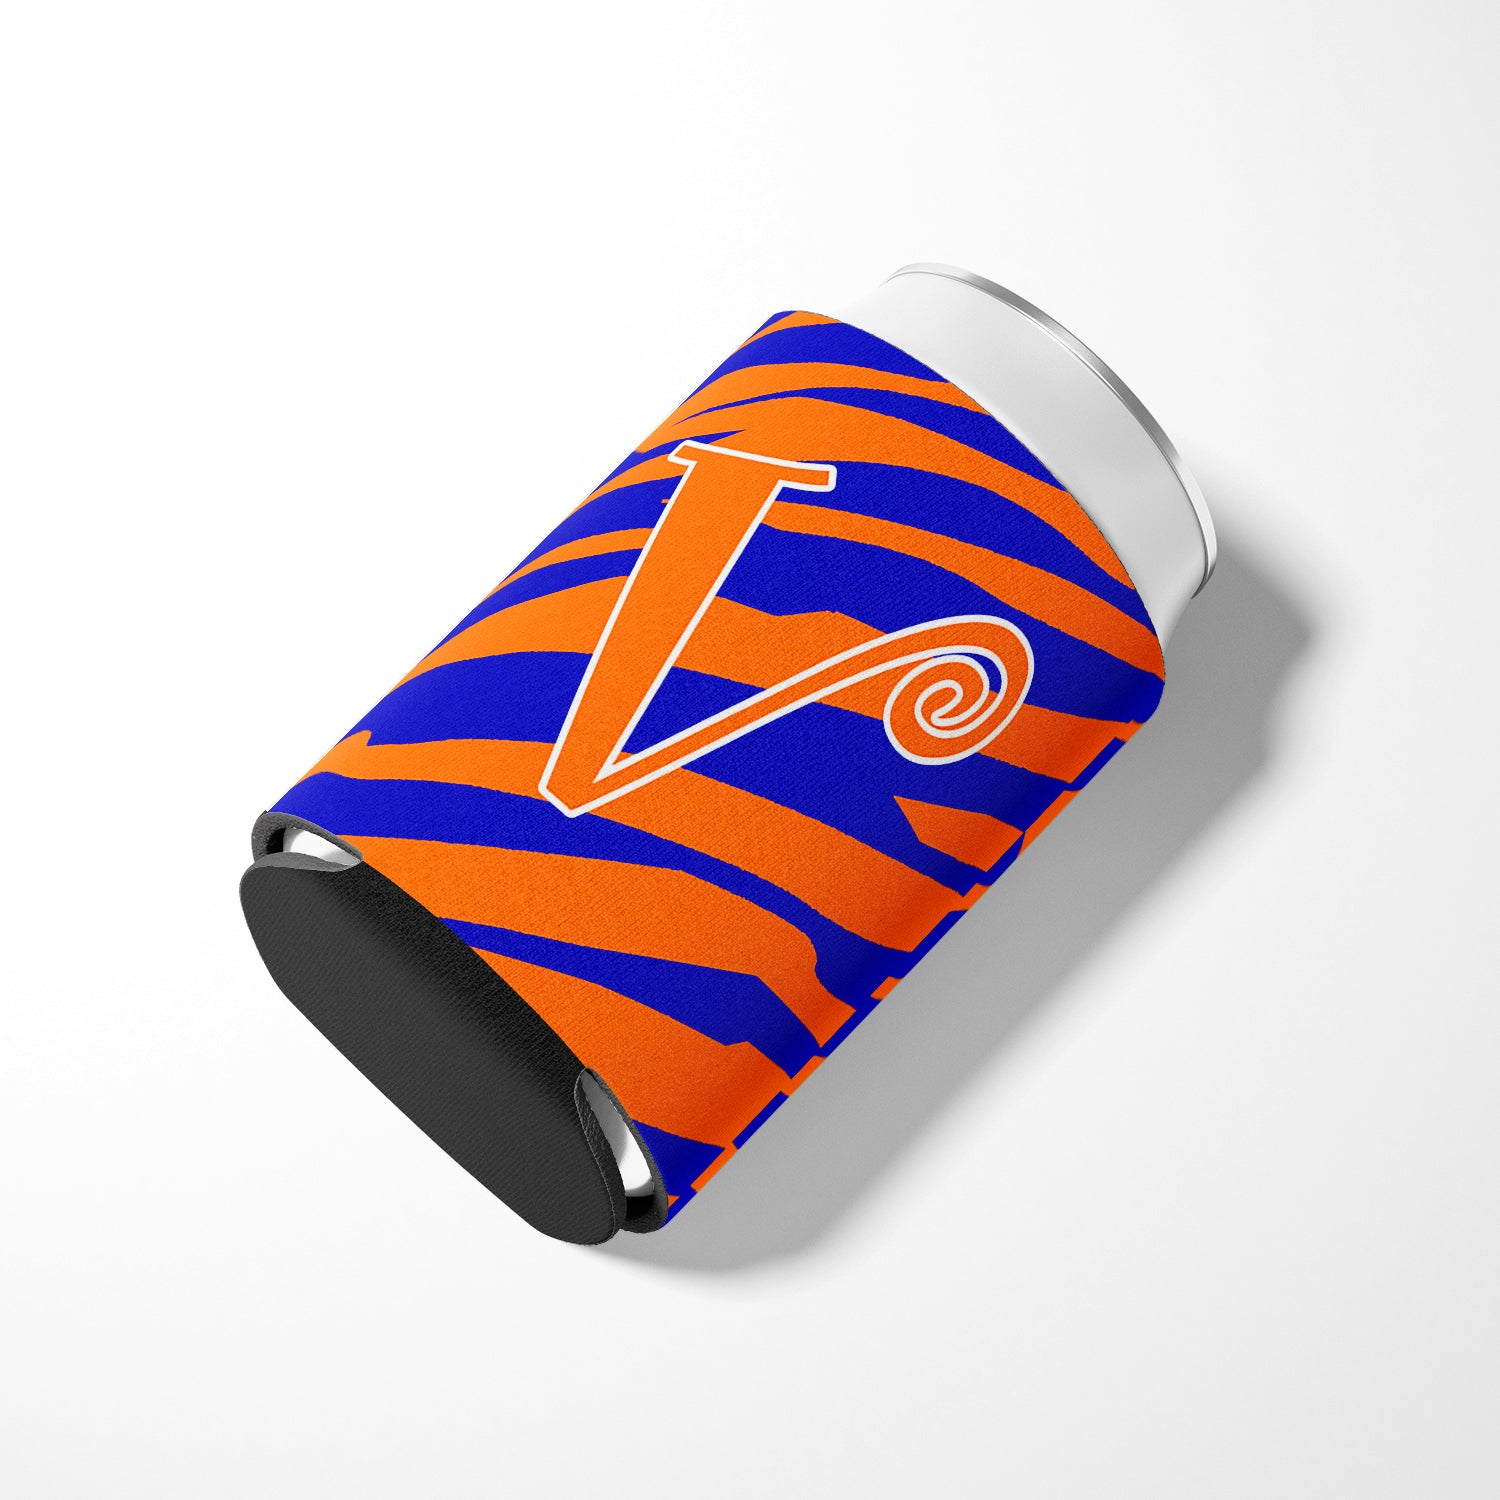 Letter V Initial Monogram - Tiger Stripe Blue and Orange Can Beverage Insulator Hugger